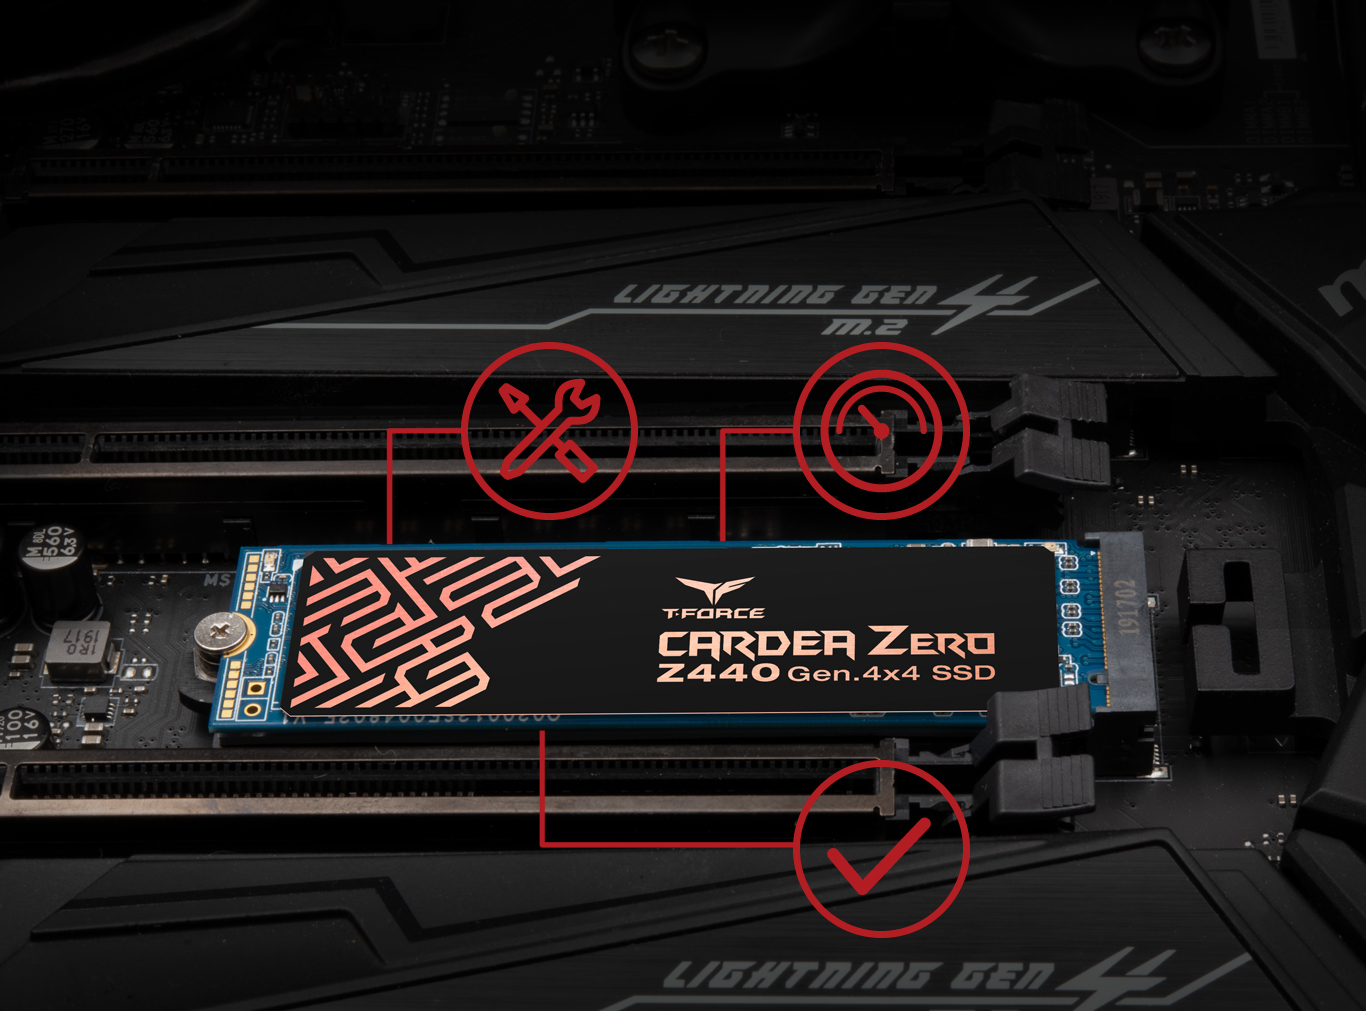 T-FORCE CARDEA ZERO Z440 M.2 NVMe PCIe SSD SMART MANAGEMENT TECHNOLOGY demo